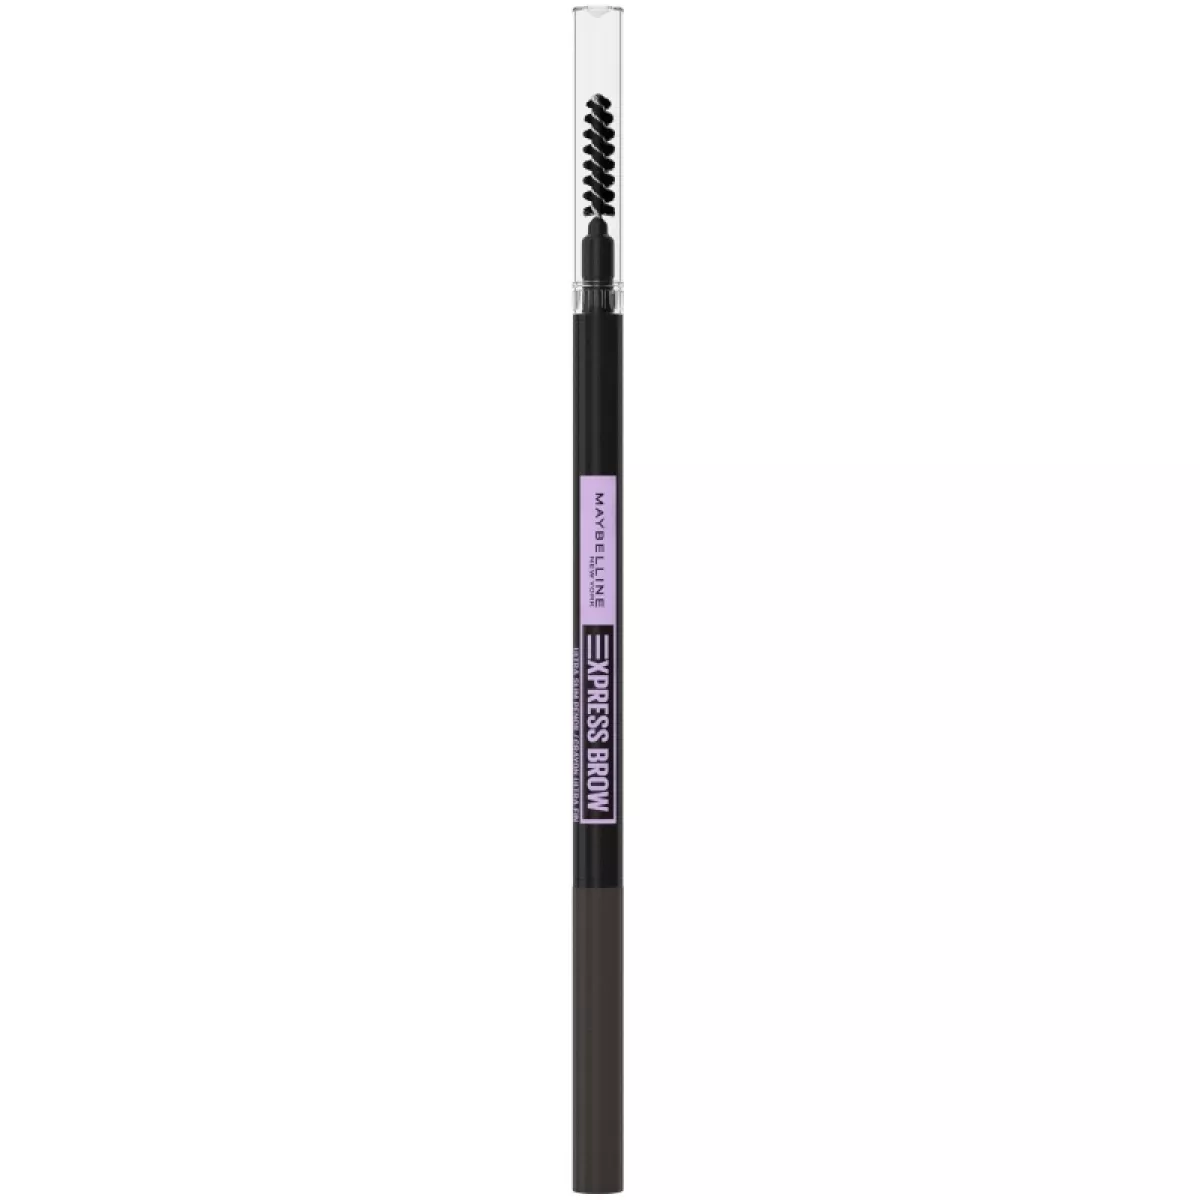 #1 - Maybelline Brow Ultra Slim Defining Pencil - 05 Deep Brown